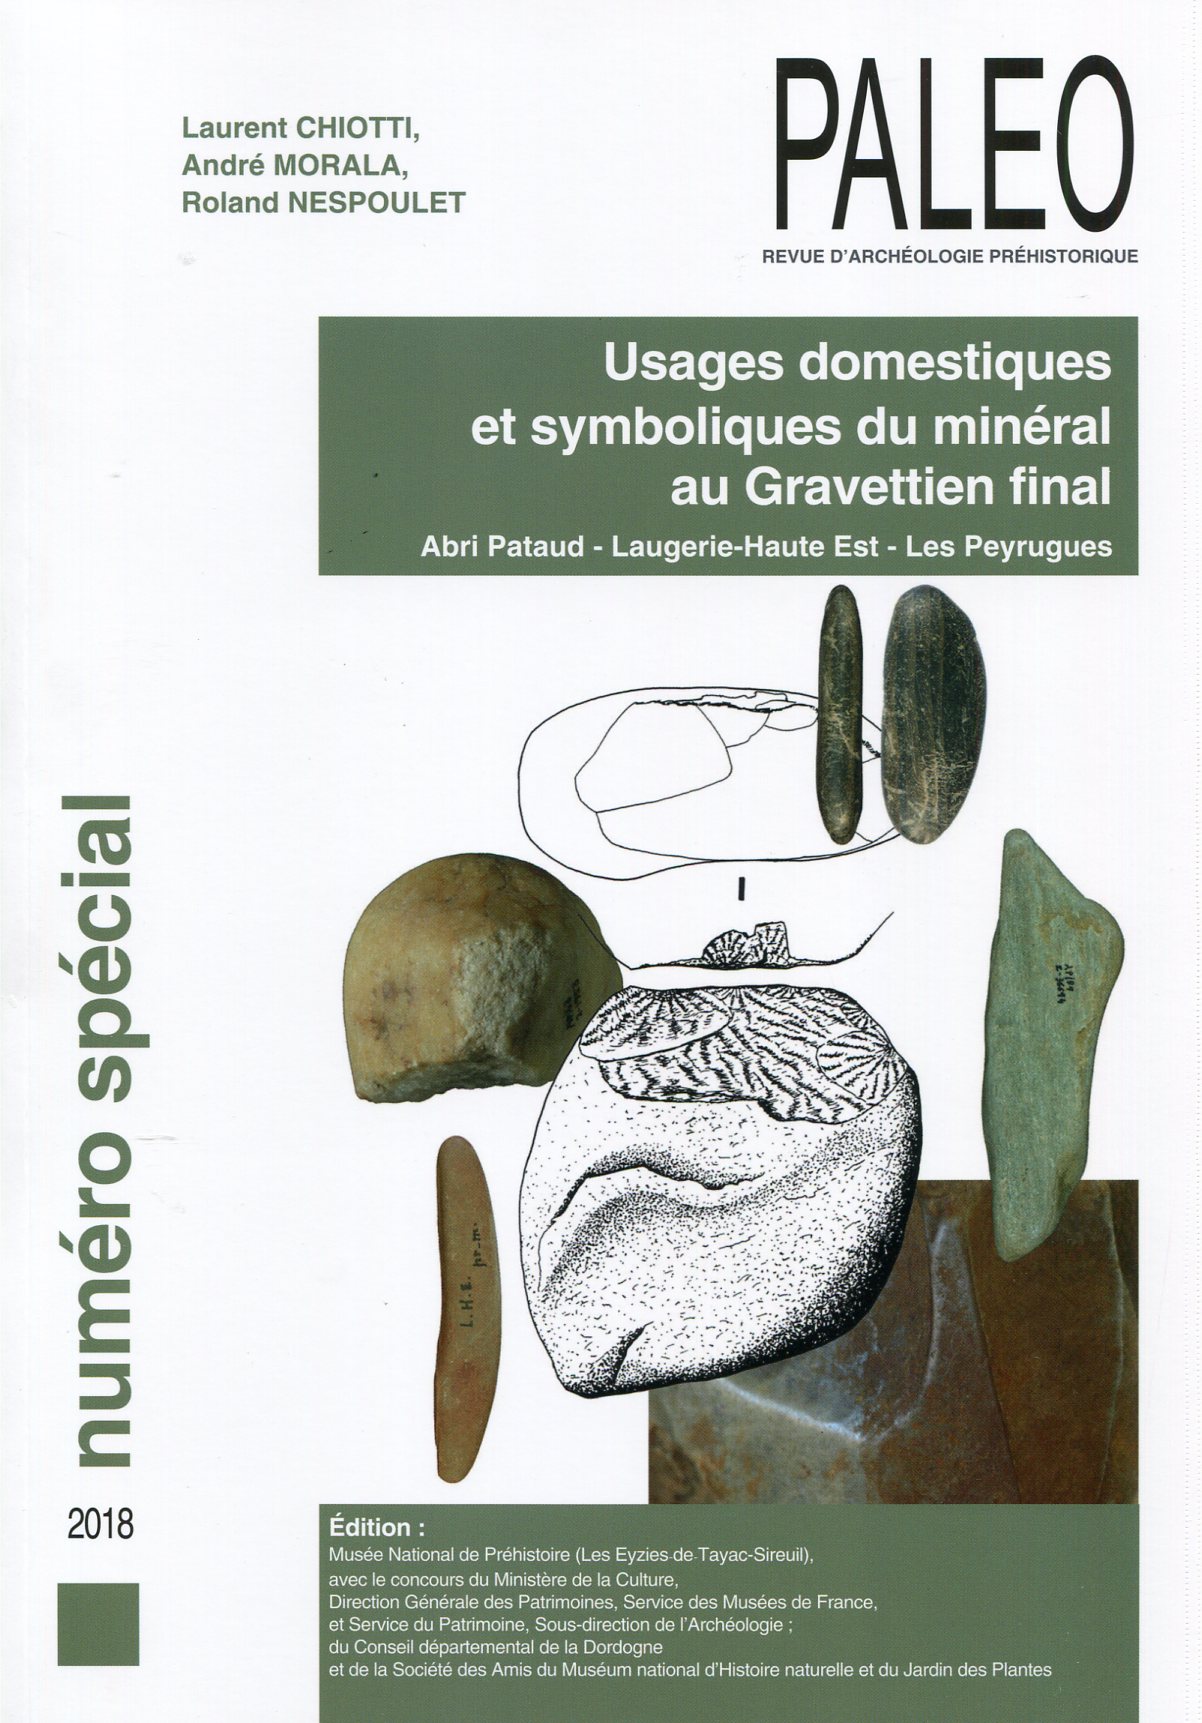 Usages domestiques et symboliques du minéral au Gravettien final. Abri Pataud - Laugerie-Haute Est - Les Peyrugues, (Paléo, n° spécial), 2018, 212 p.